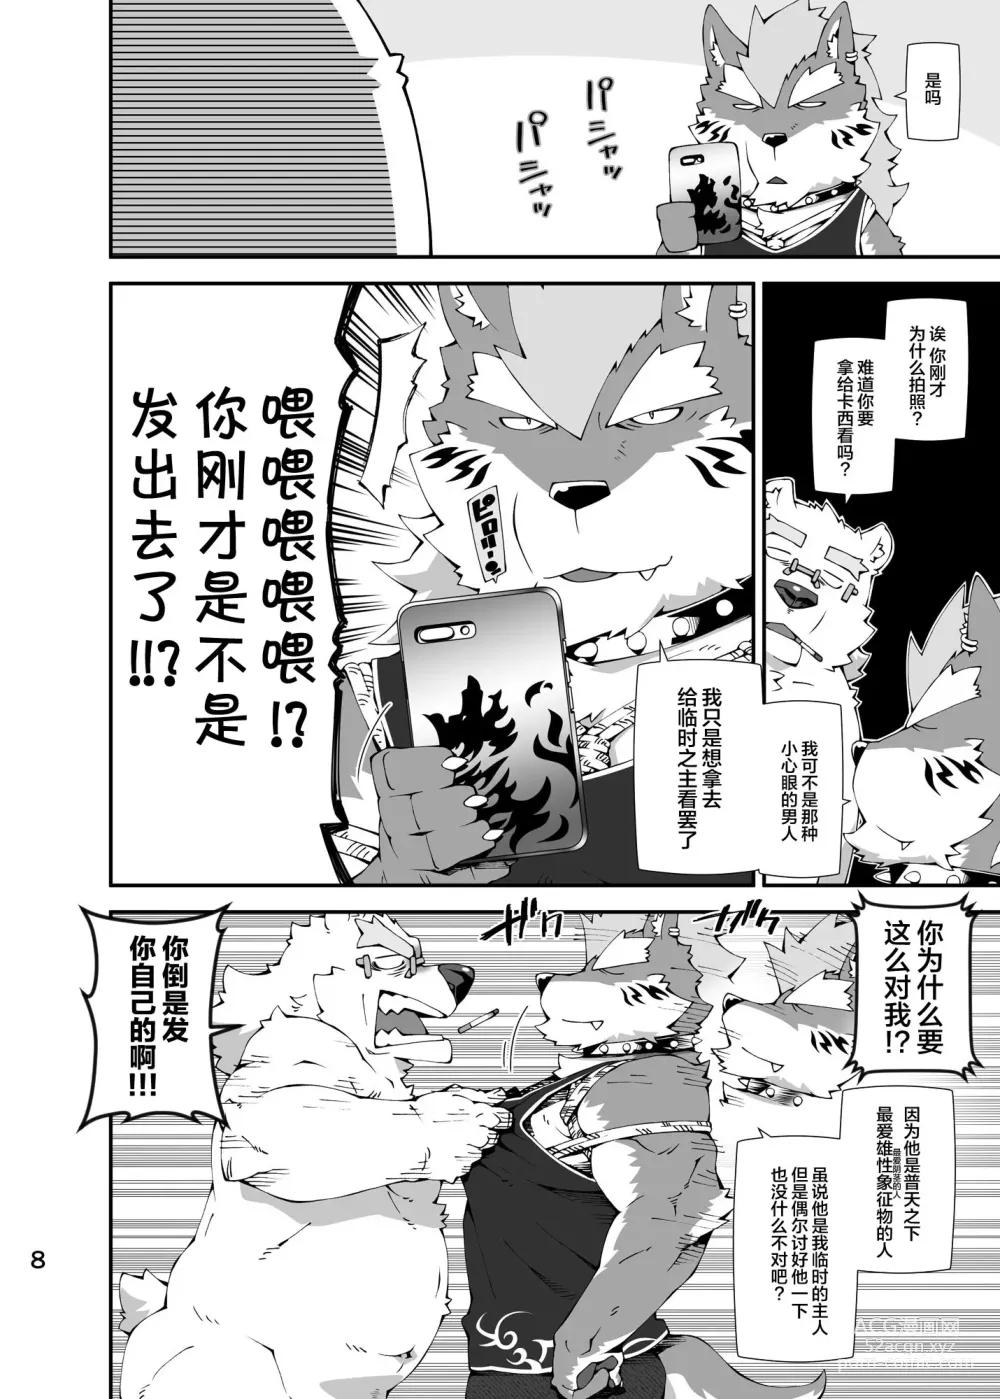 Page 7 of doujinshi Shirokuma to Fe